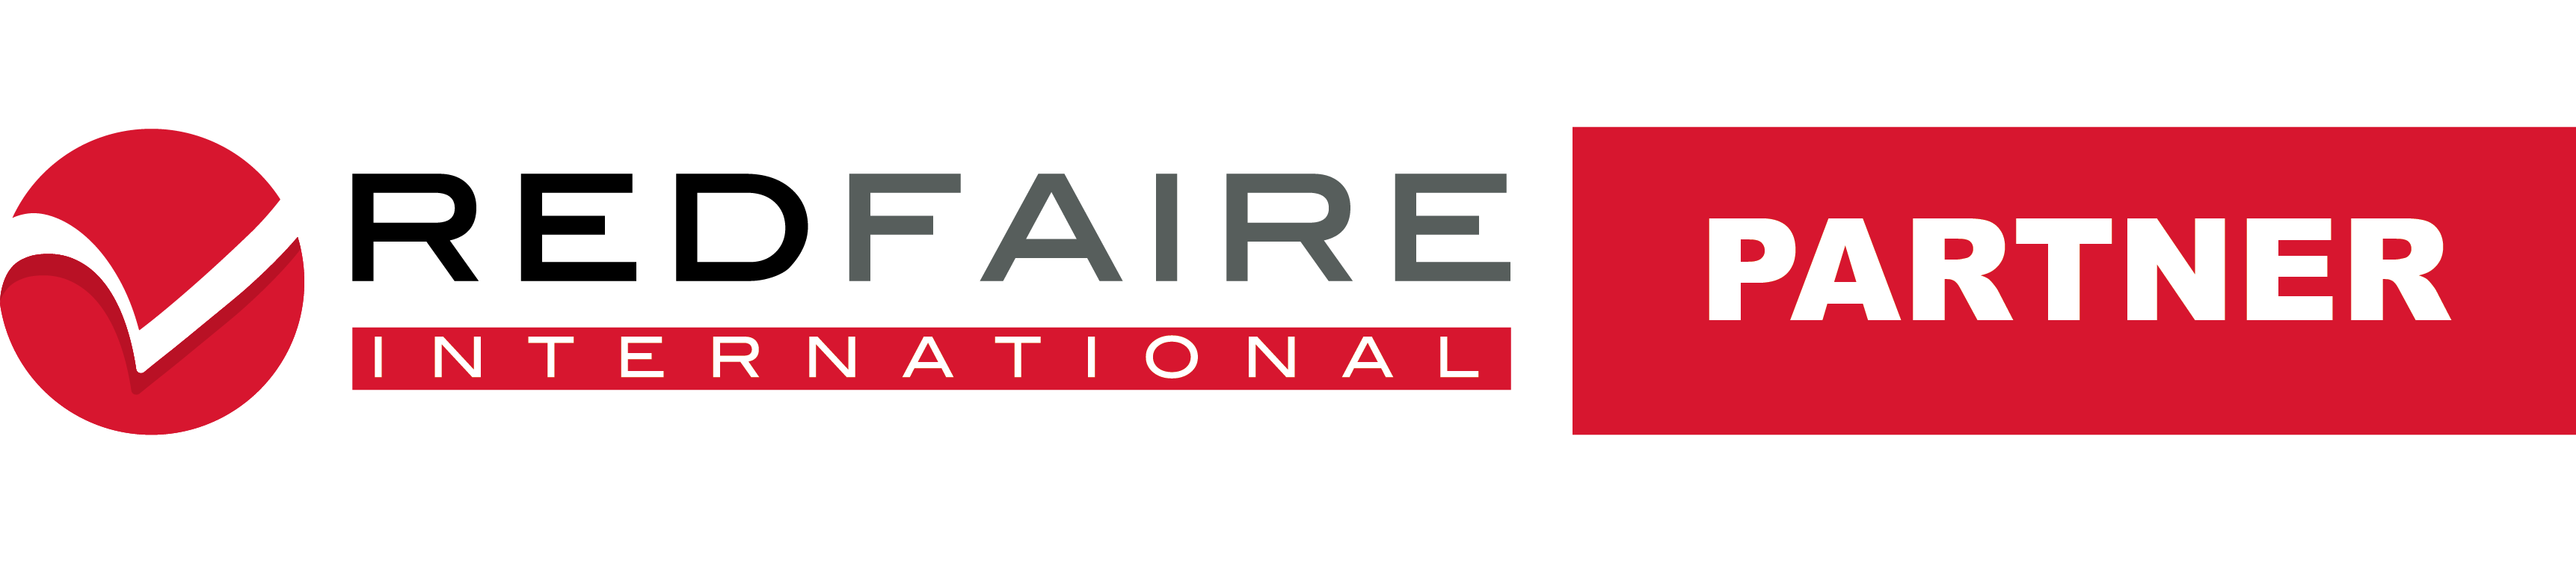 Redfaire International Partner logo